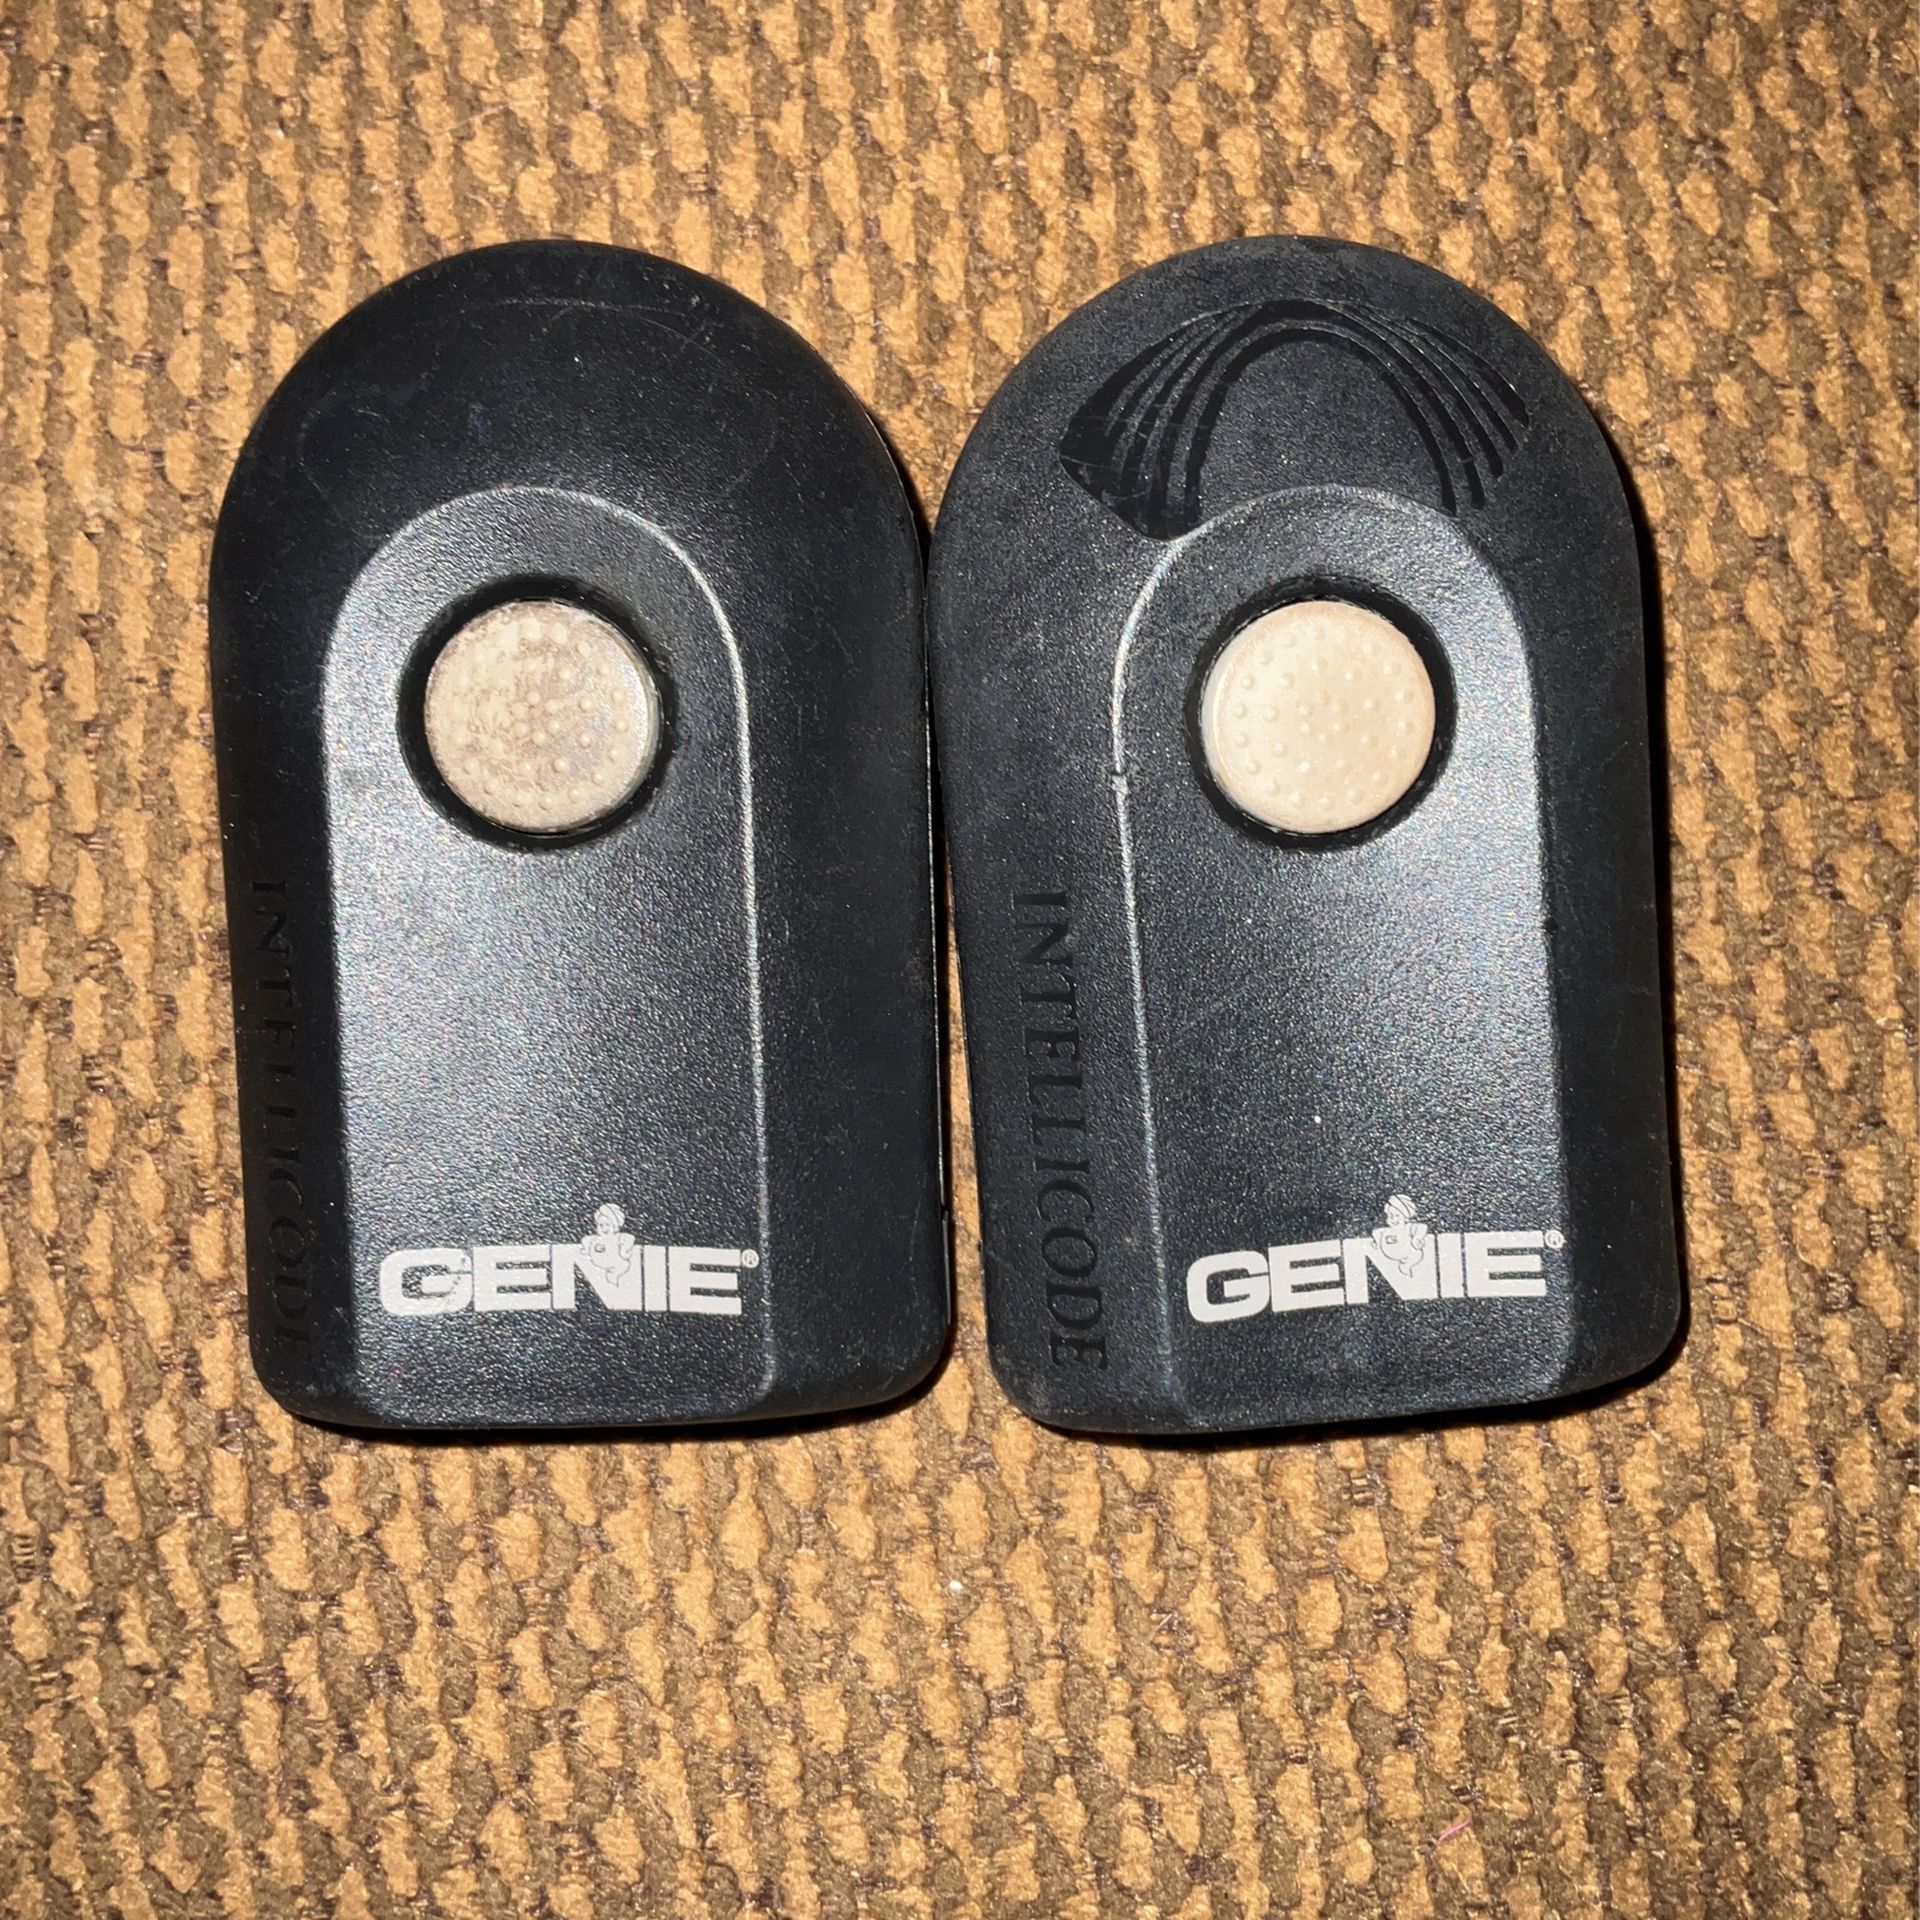 Genie Garage Remote Openers